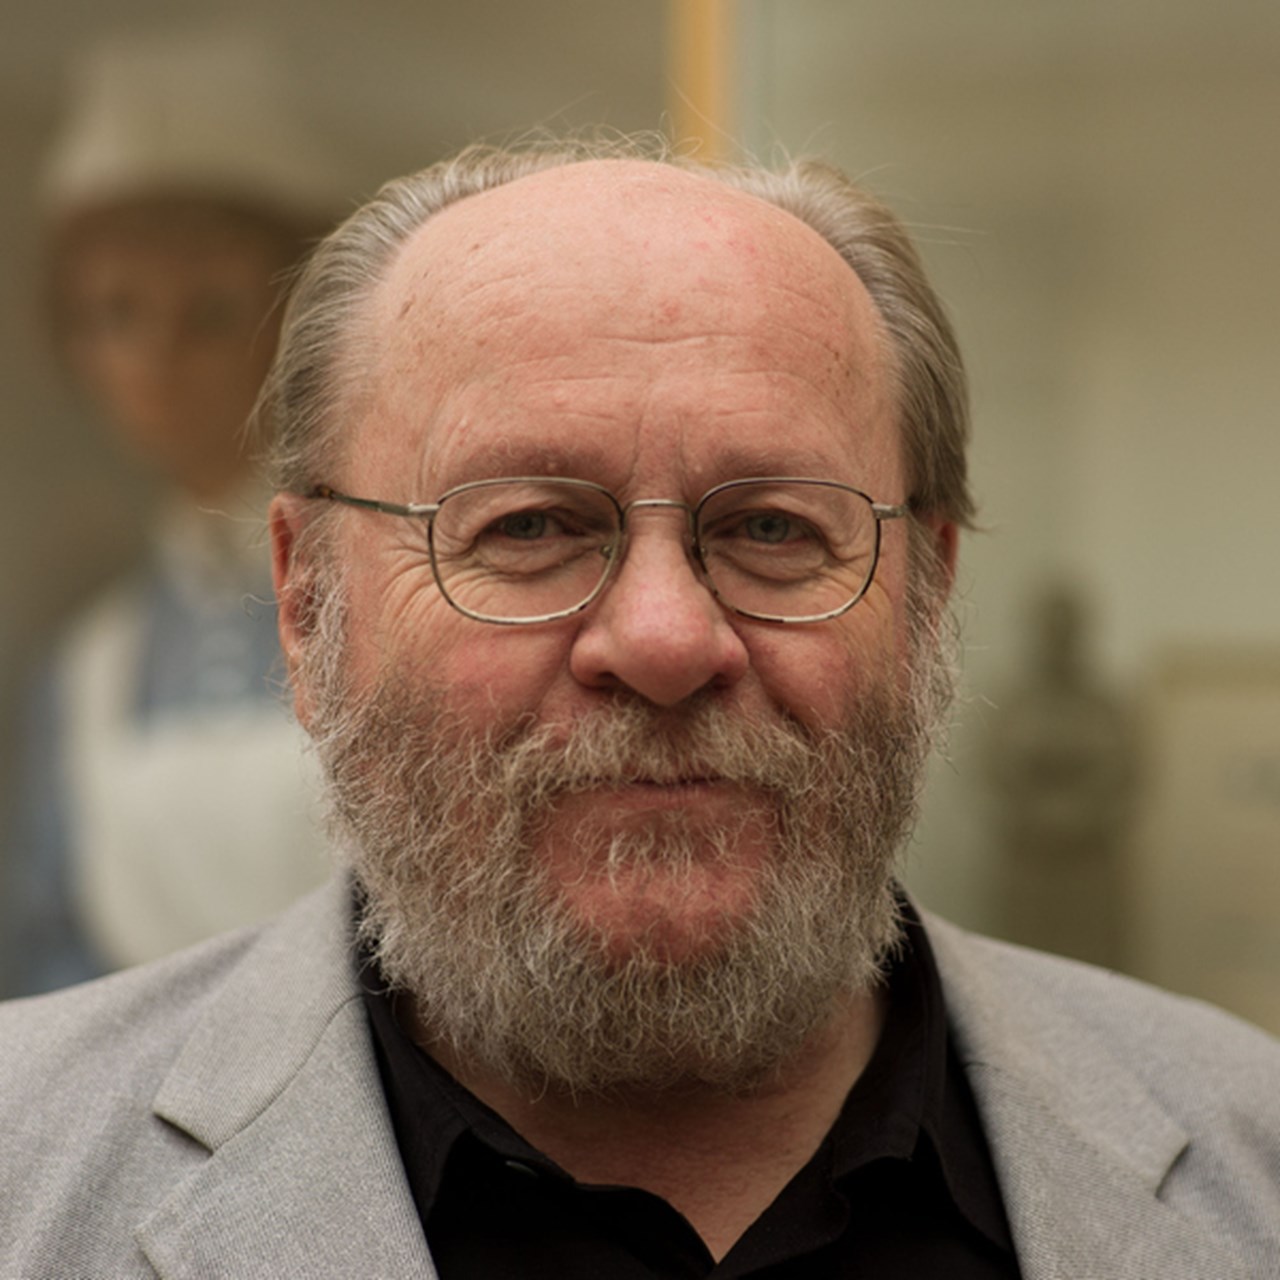 Porträttbild på Anders Lindseth, professor emeritus i praktisk filosofi, med skägg och glasögon.